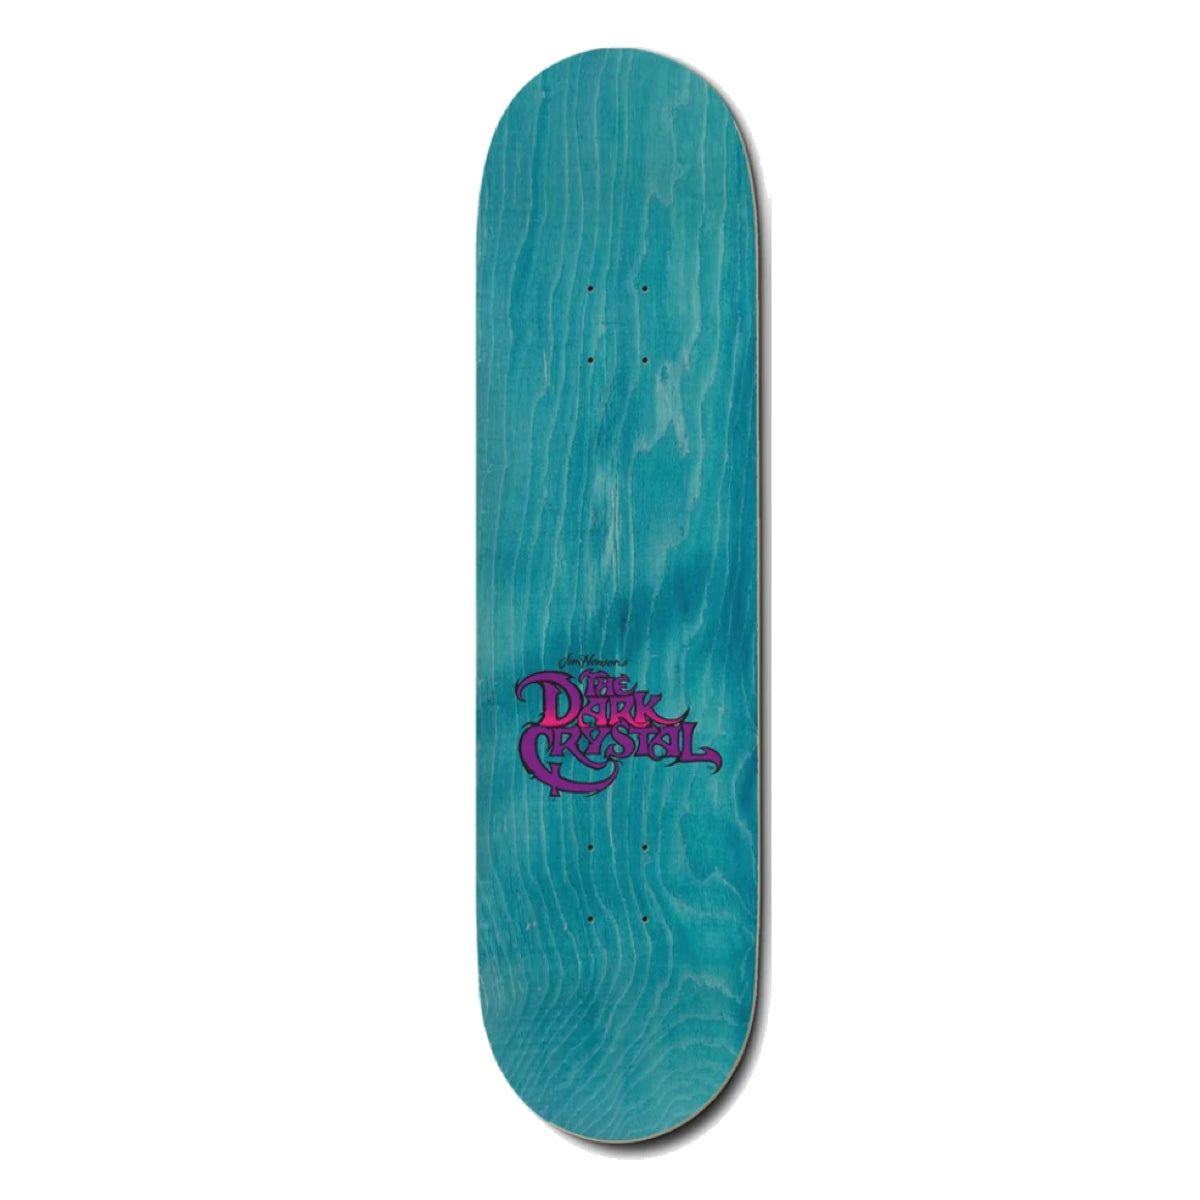 Madrid x Dark Chrystal Skeksis  Skateboard Deck